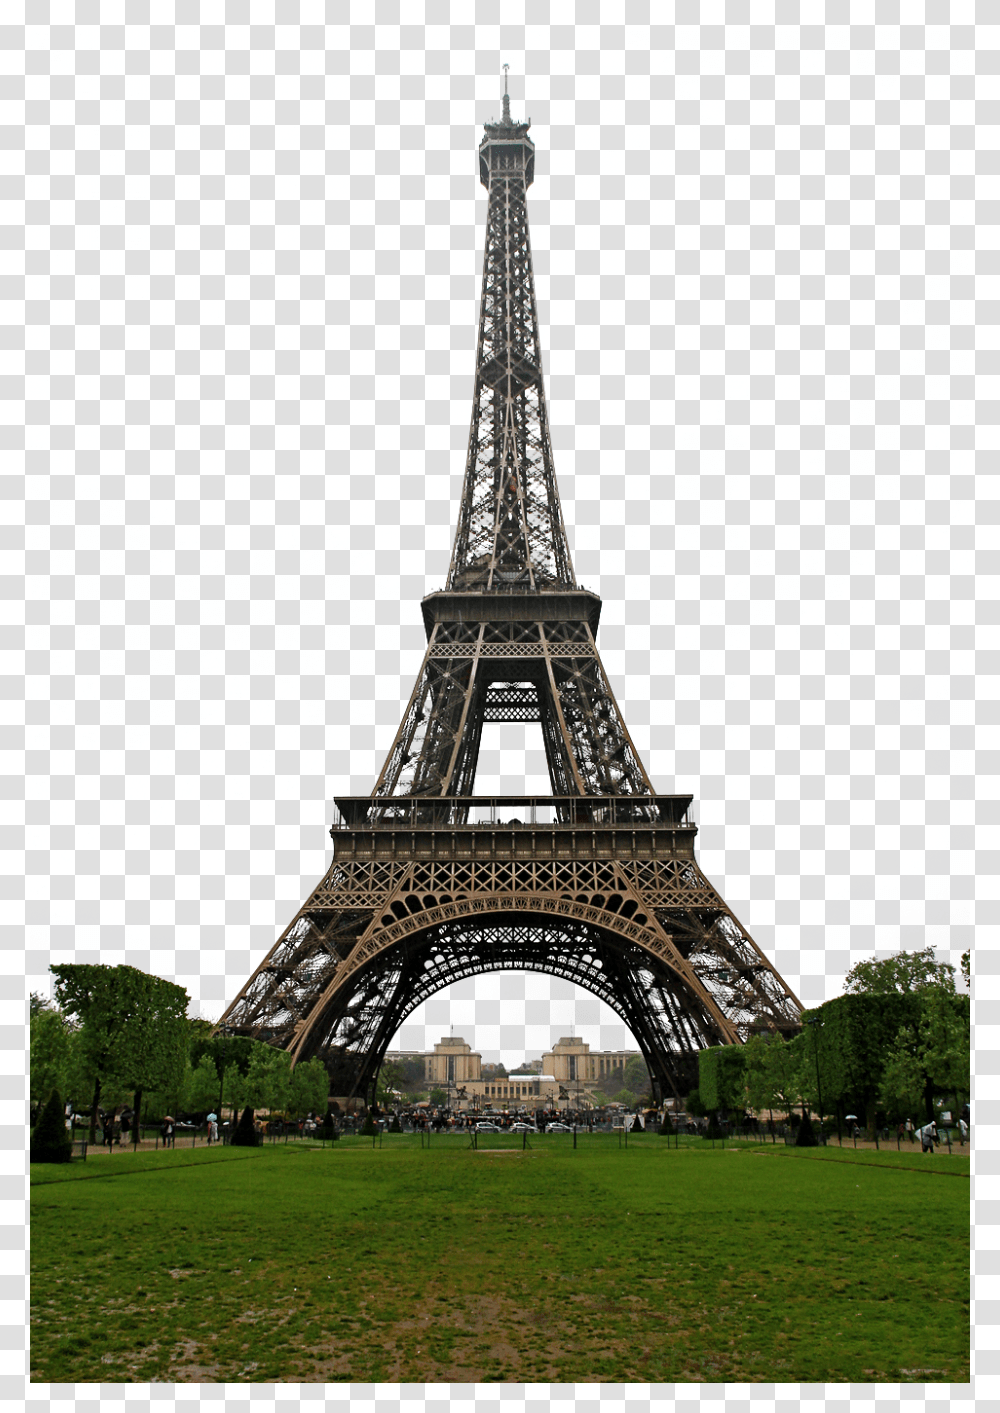 Eiffel Tower, Architecture, Building, Grass, Plant Transparent Png